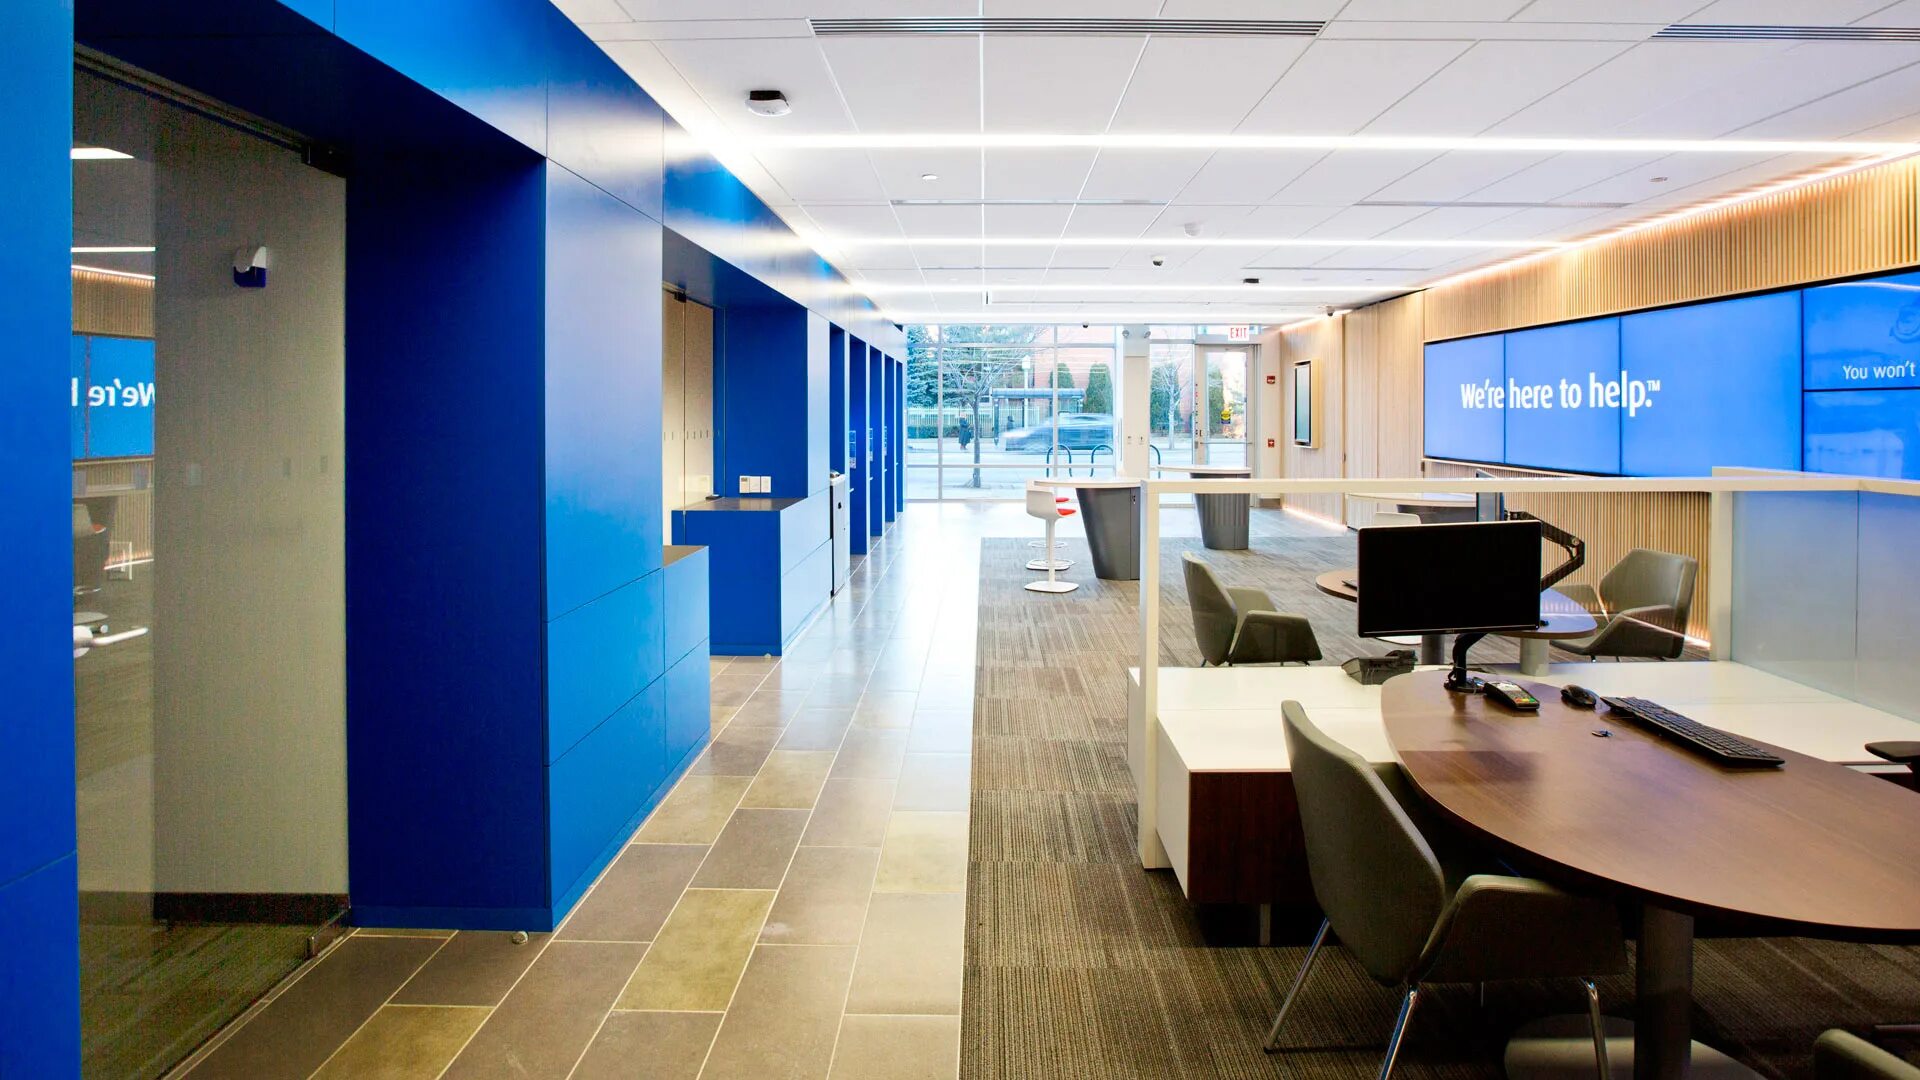 Втб президентский бульвар. Интерьер банковского офиса. Интерьер офиса в синем цвете. Офис в голубых тонах. Офис внутри.